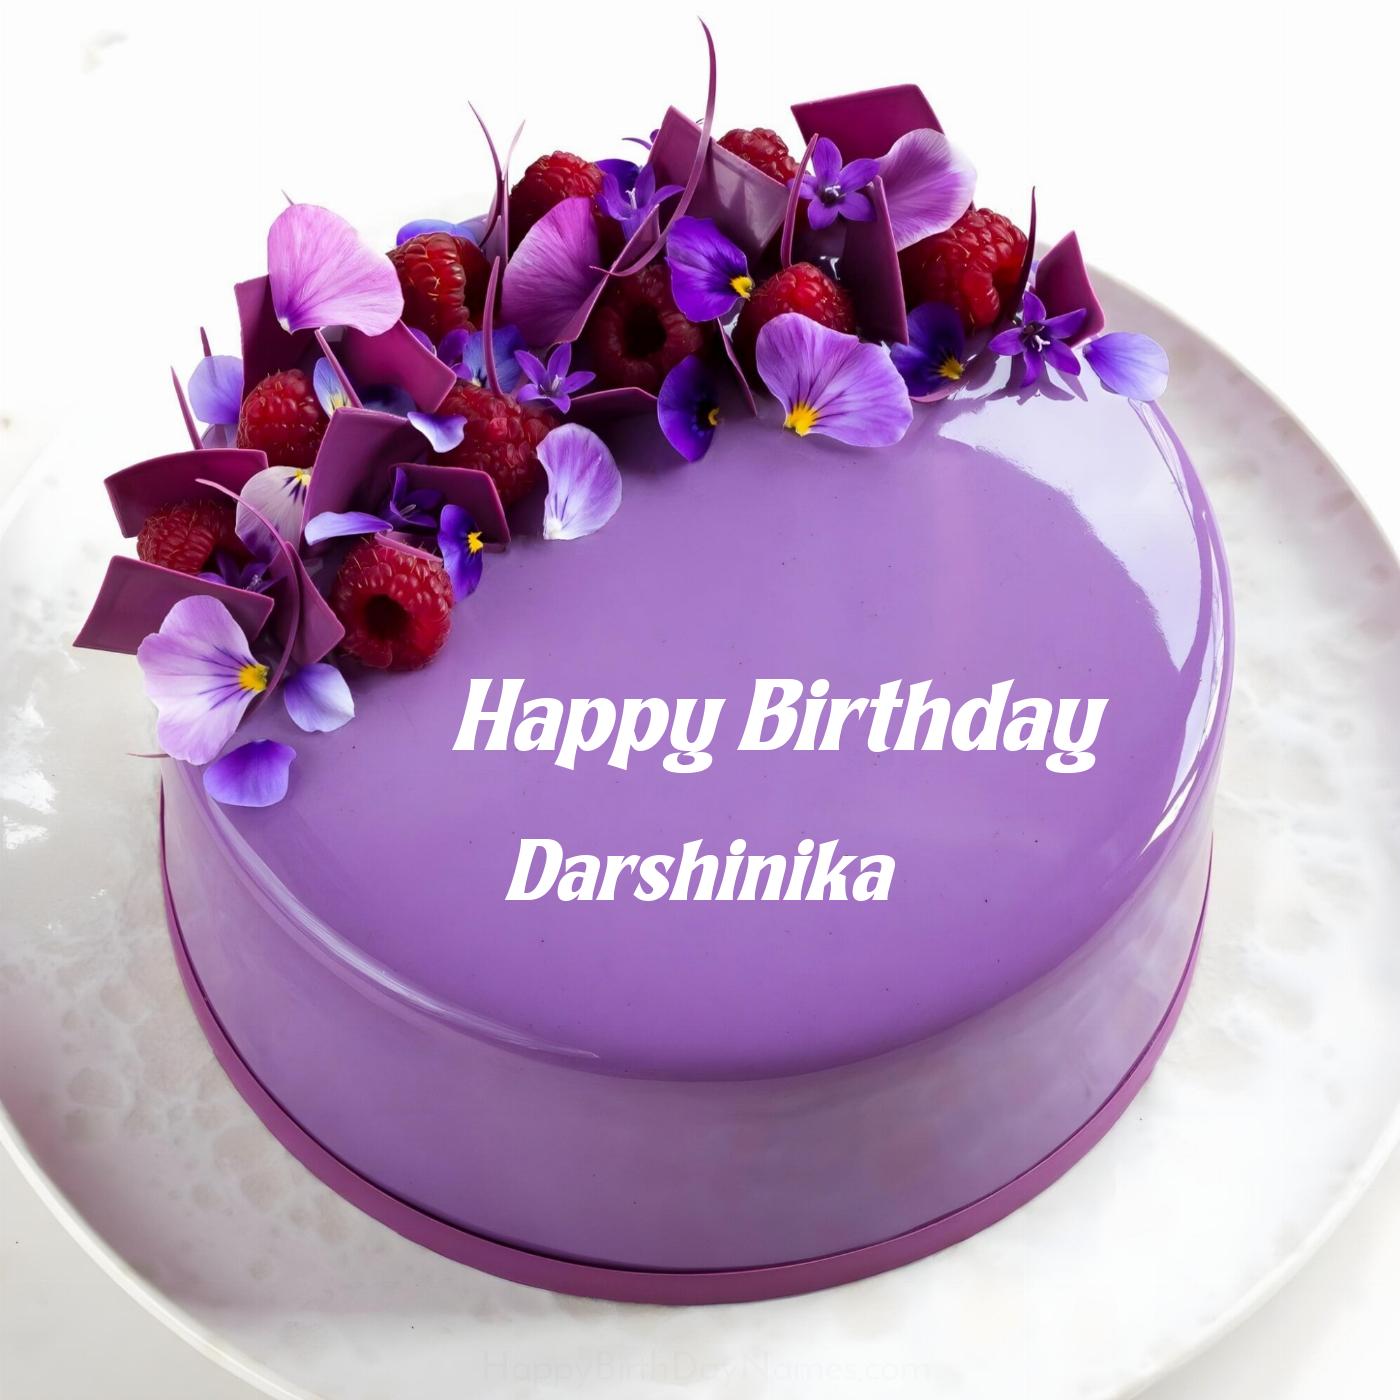 Happy Birthday Darshinika Violet Raspberry Cake